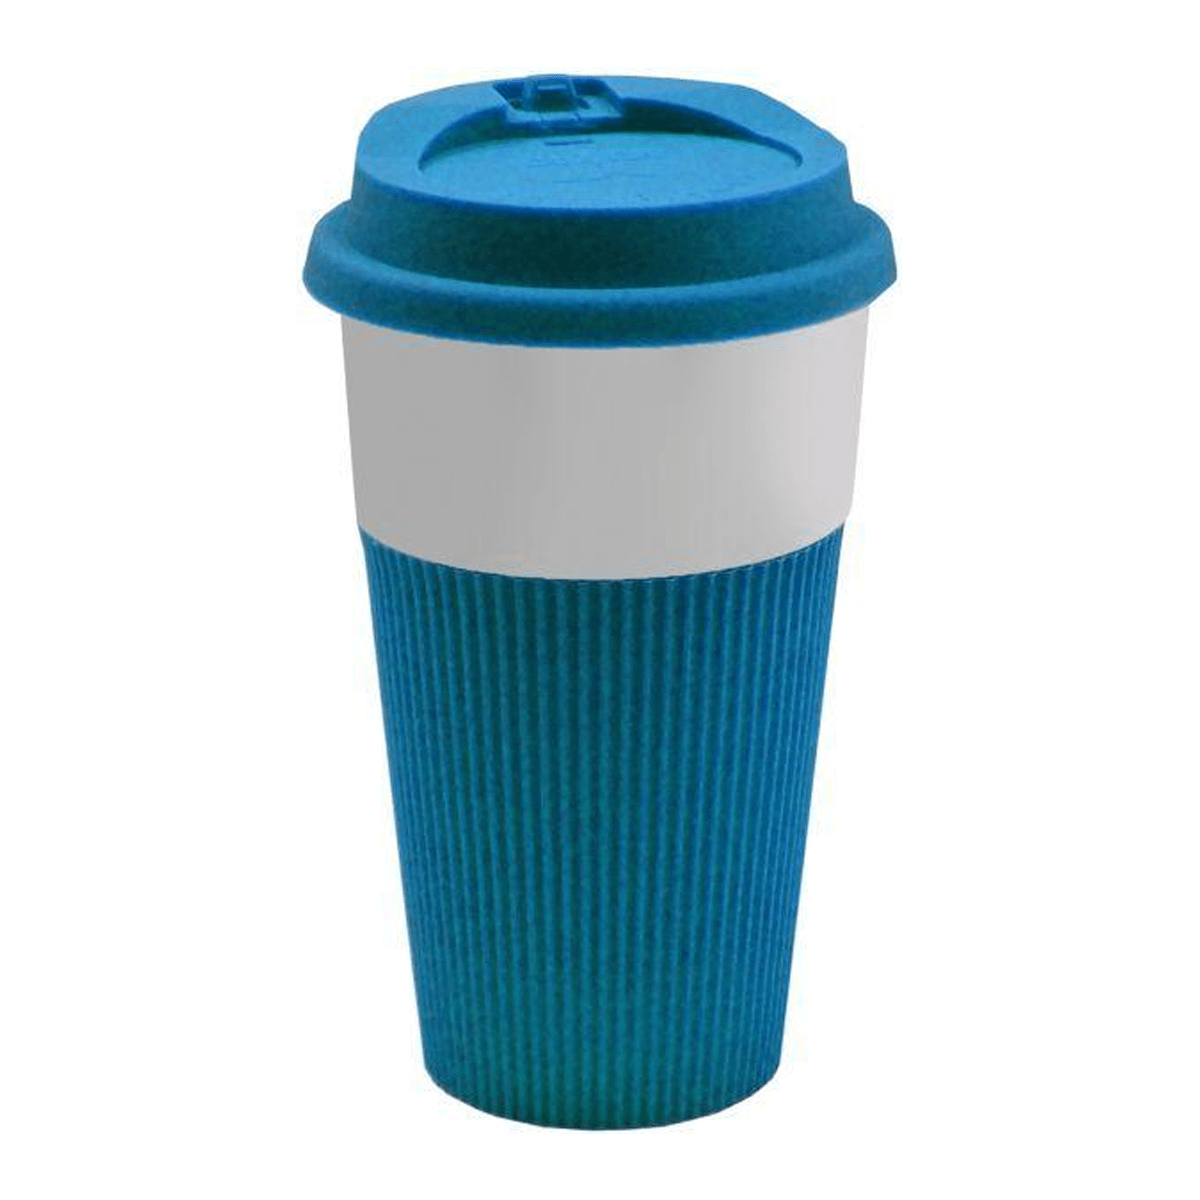 Feelings Ceramic and Silicone Coffee Mug with Lid, Blue/White - SquareDubai